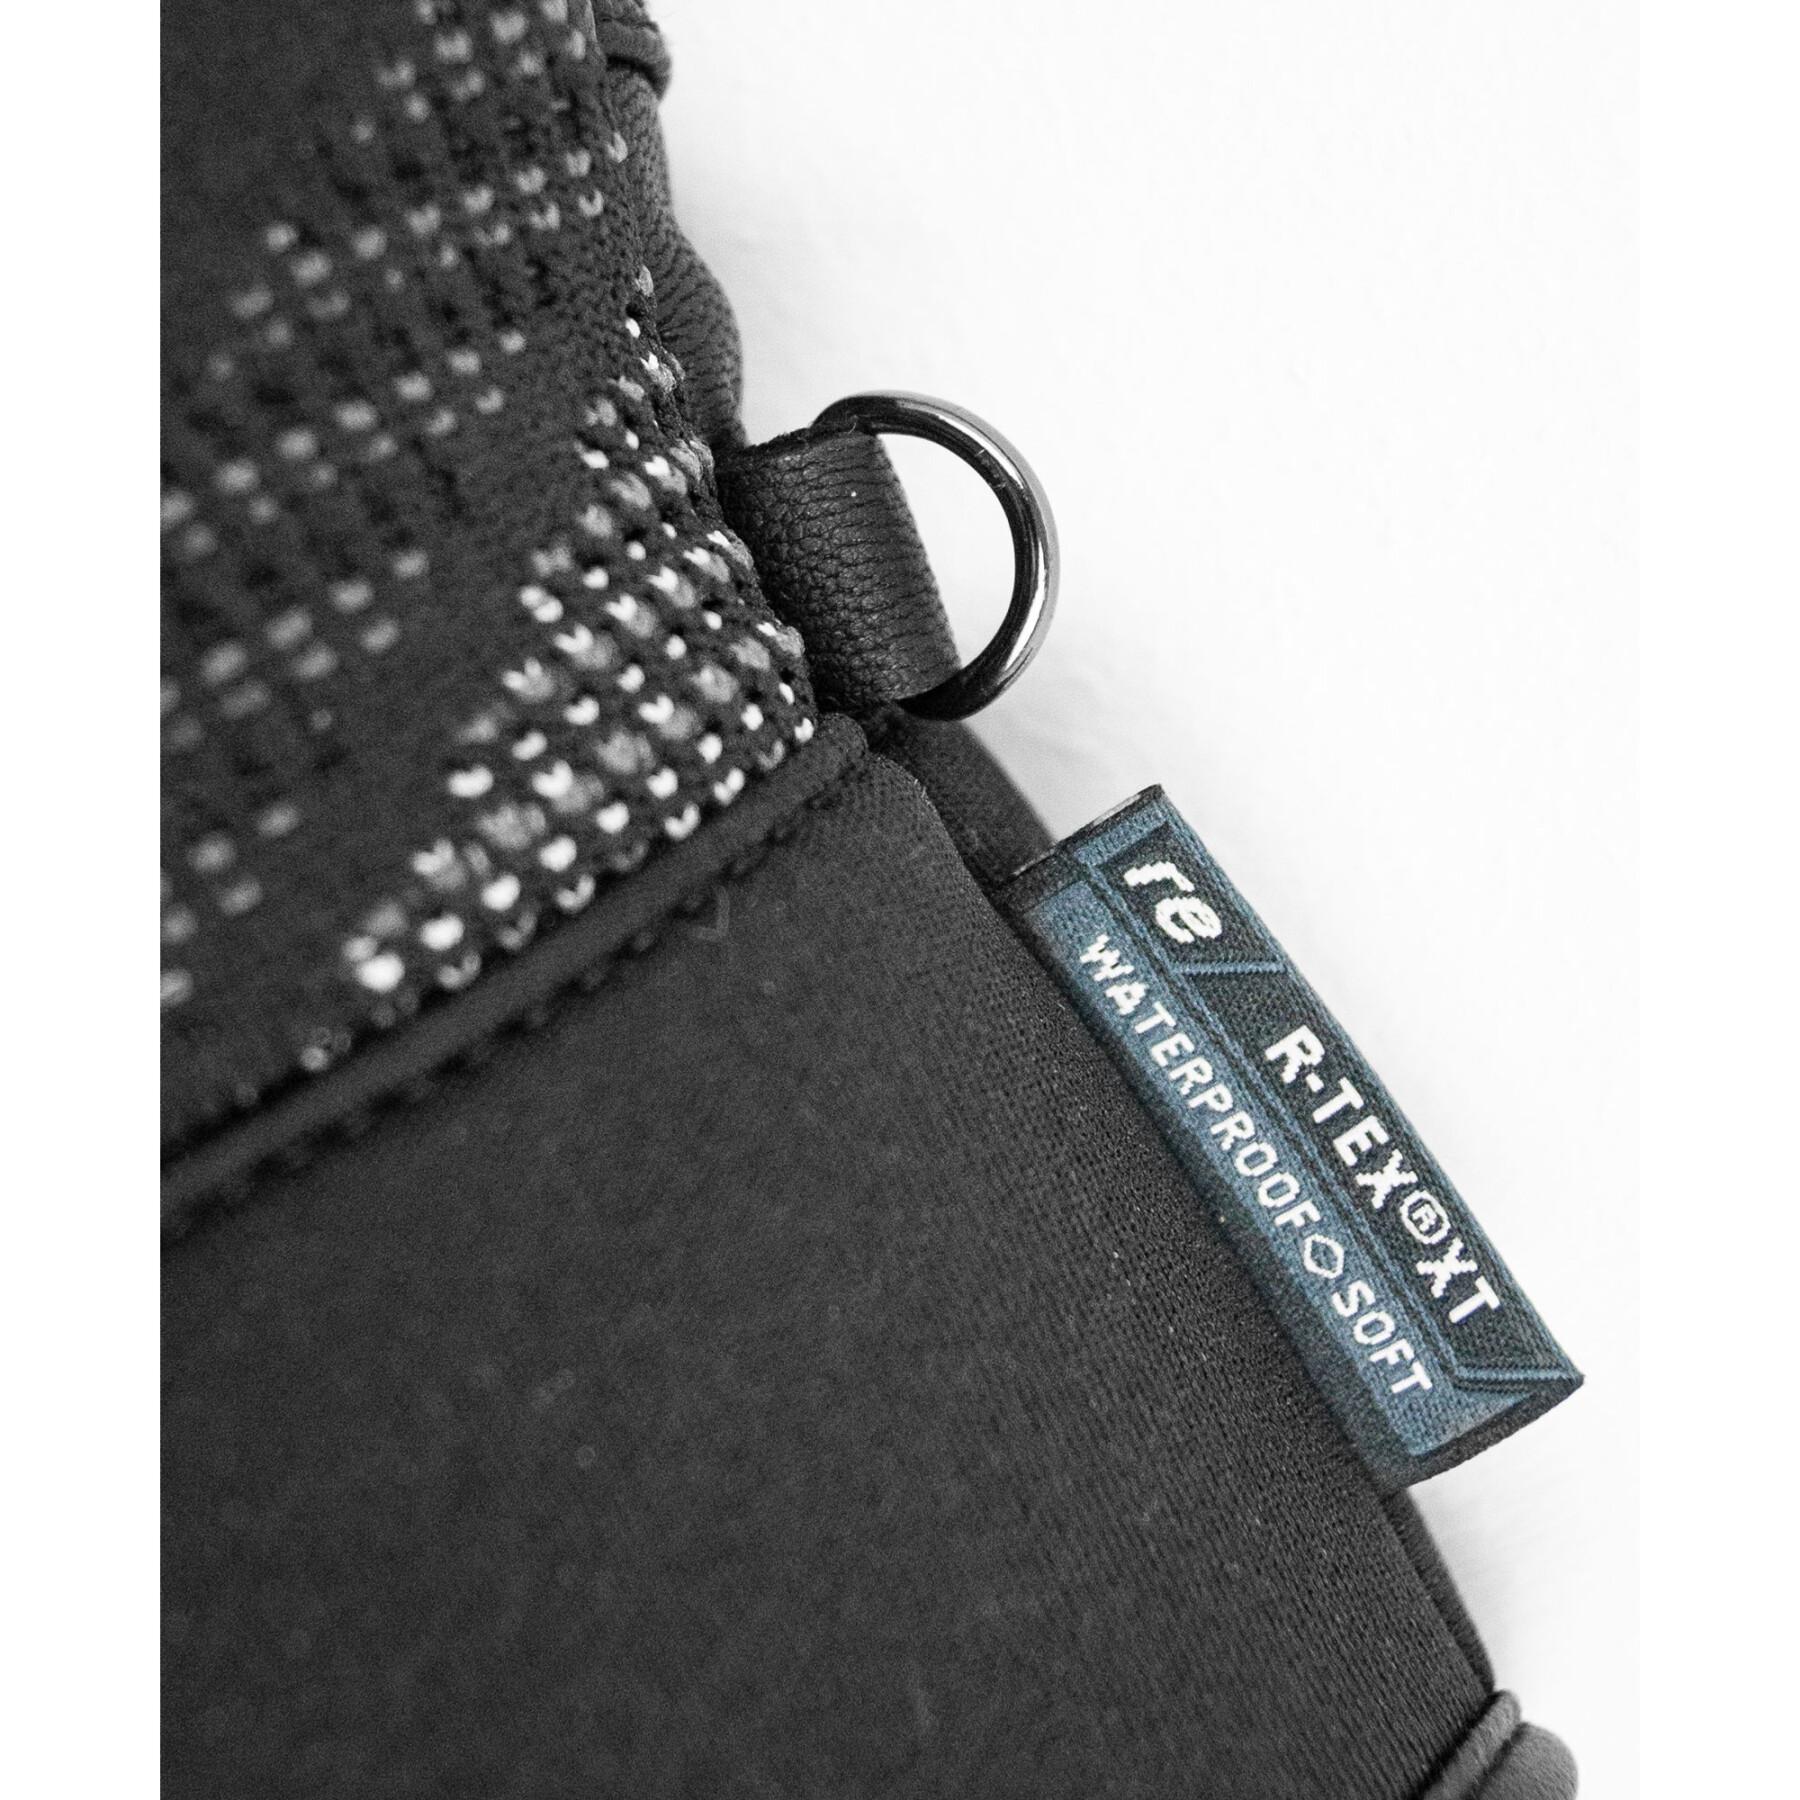 Handschoenen Reusch Re:Knit Eclipse R-TEX® XT